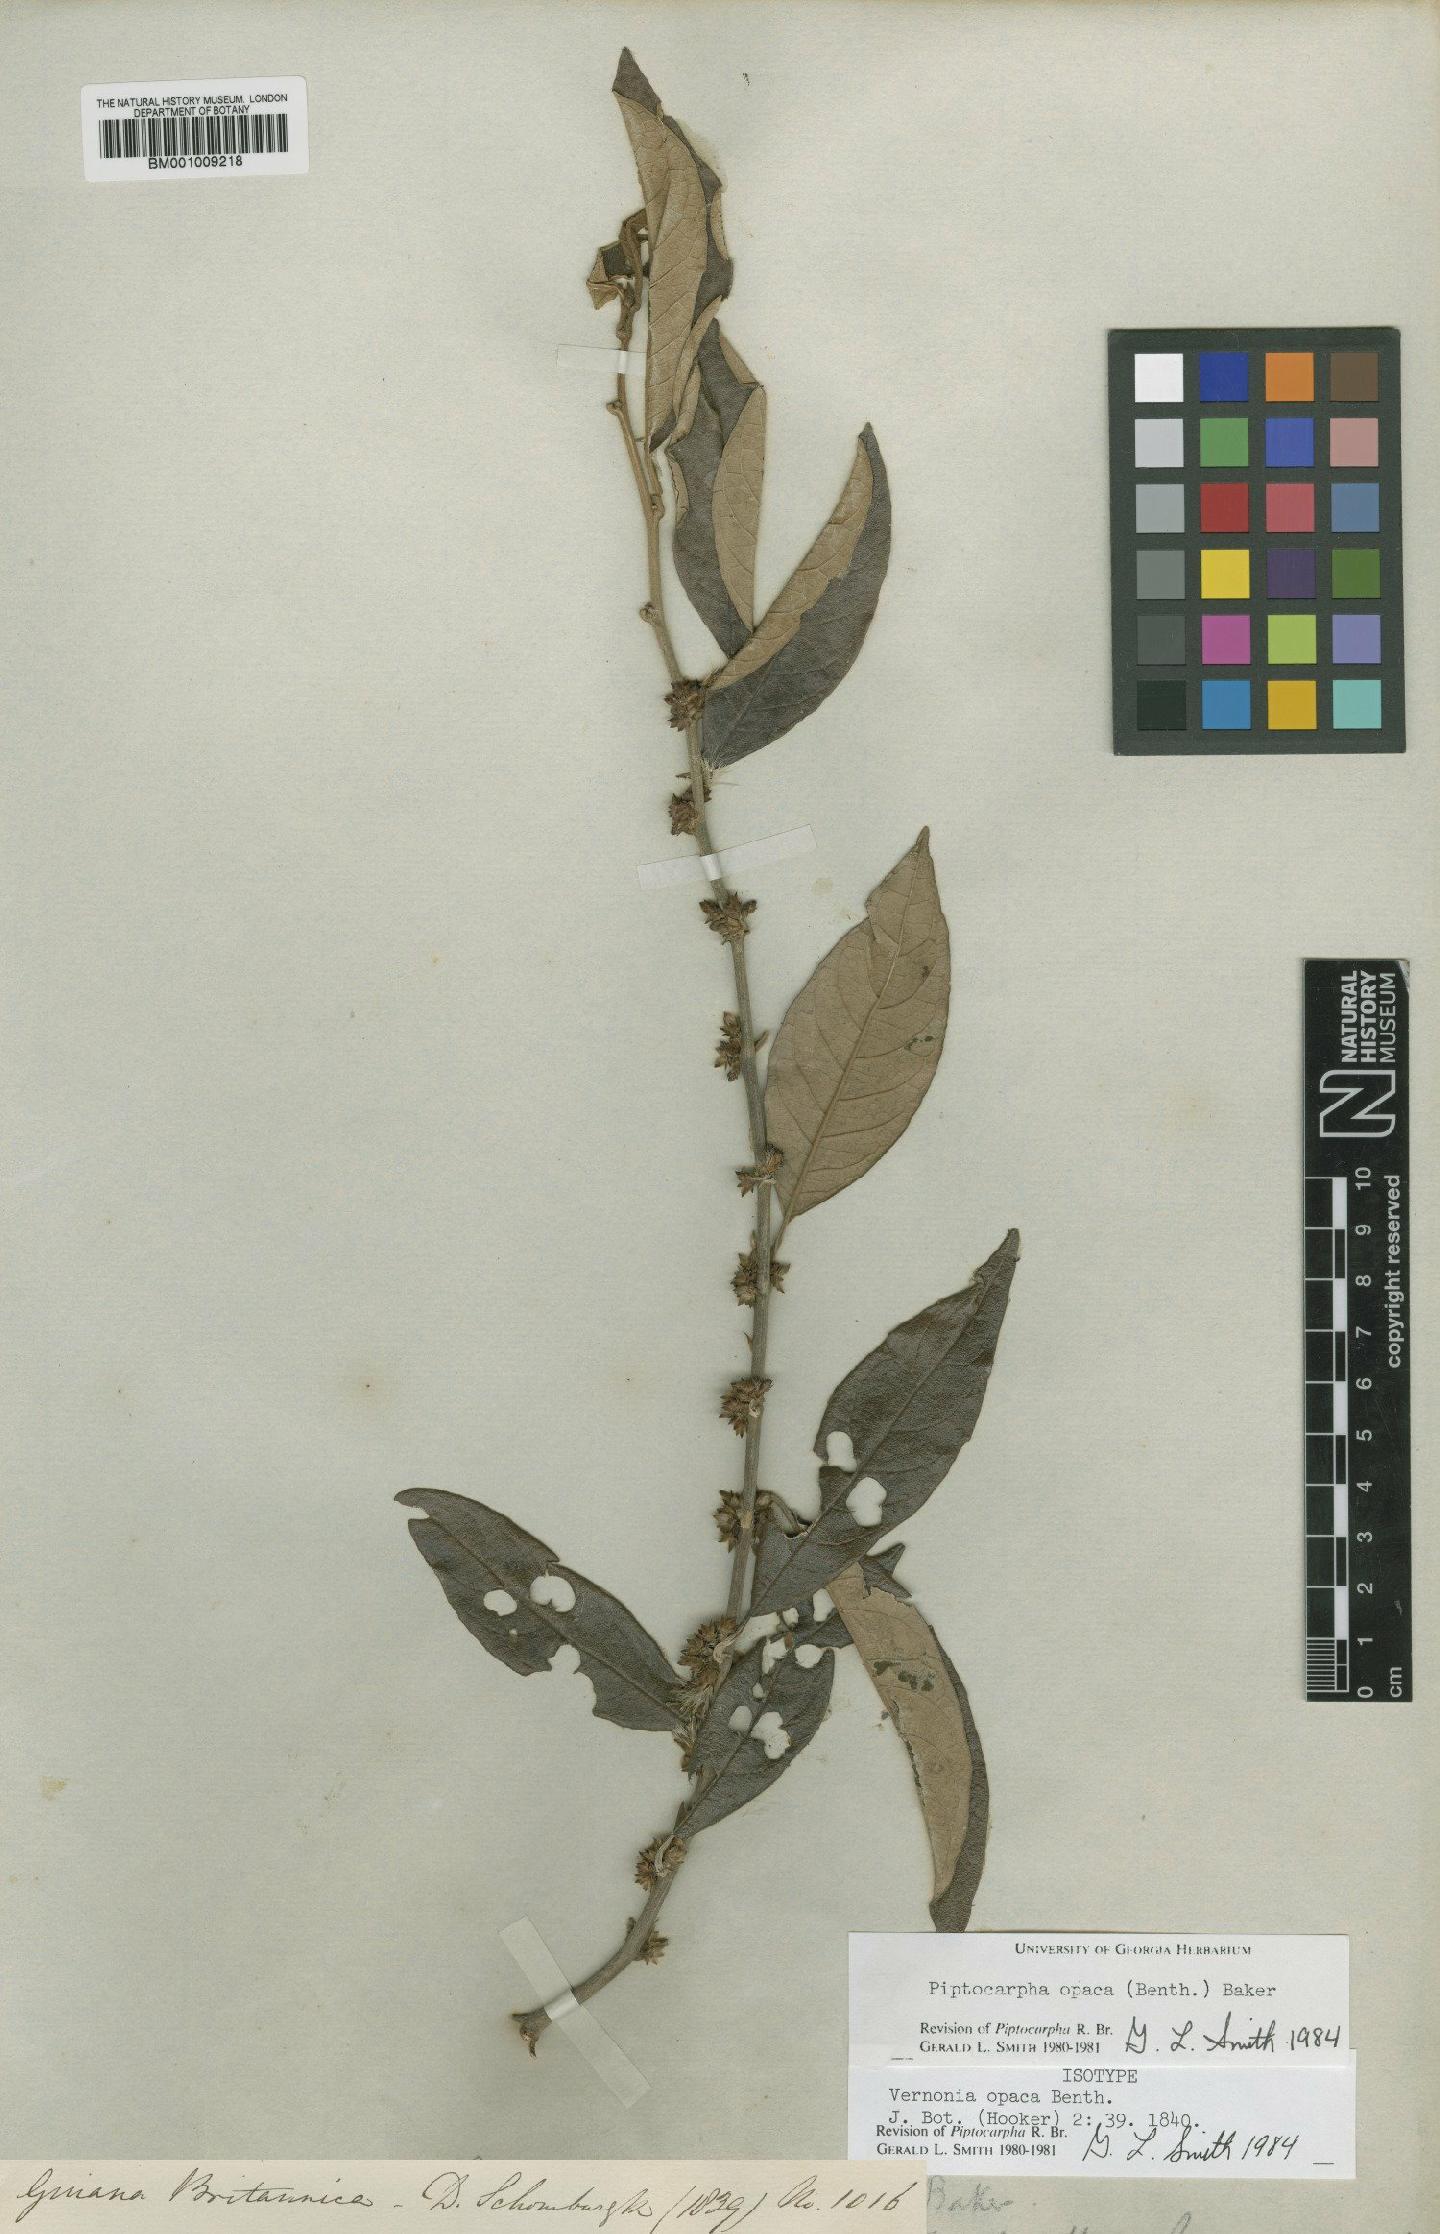 To NHMUK collection (Piptocarpha opaca (Benth.) Baker; Isotype; NHMUK:ecatalogue:557580)